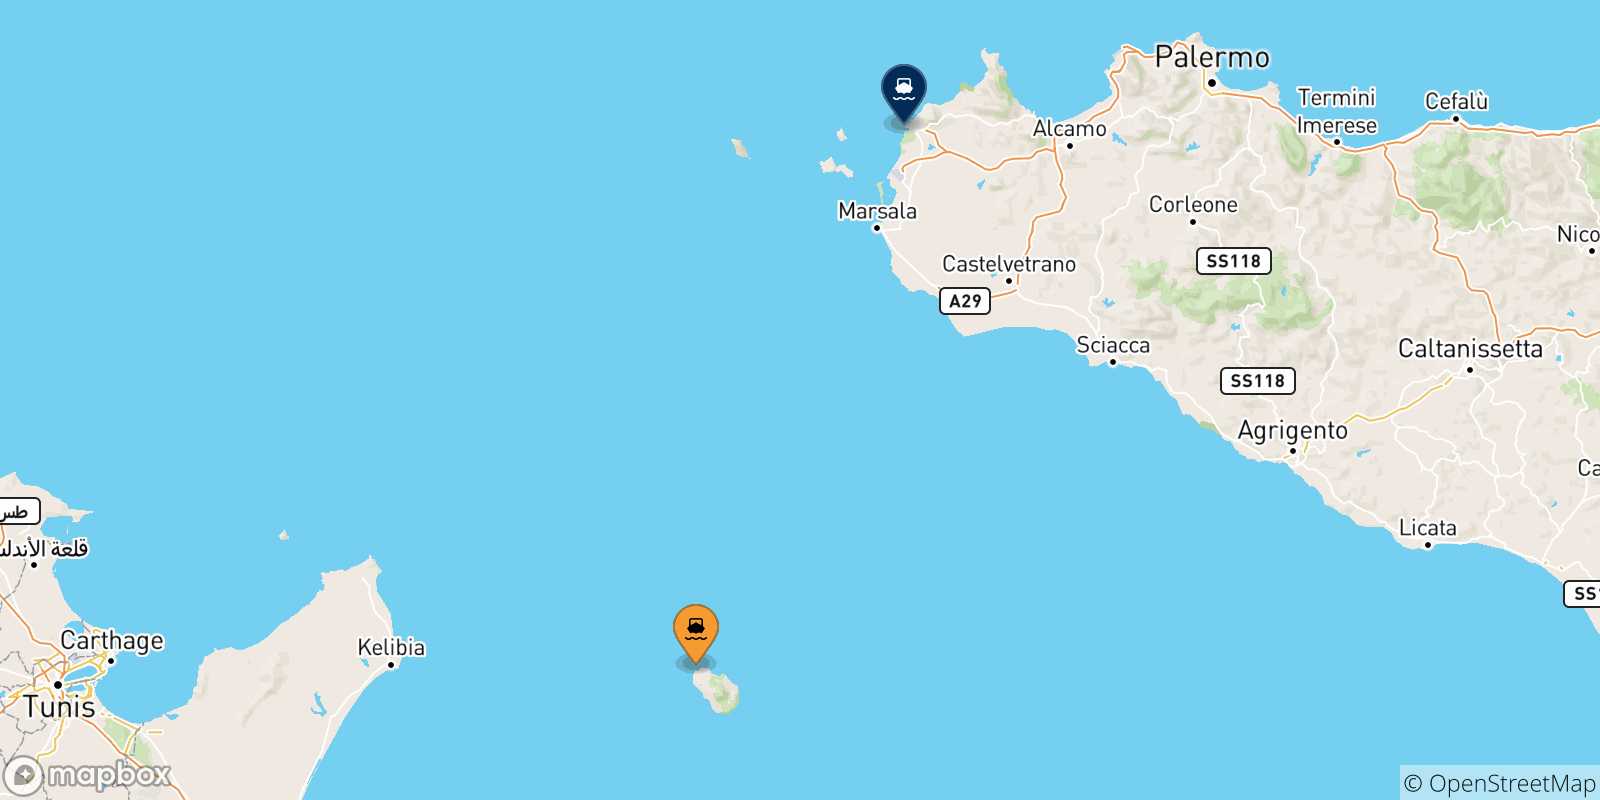 Mappa delle possibili rotte tra l'Isola Di Pantelleria e la Sicilia